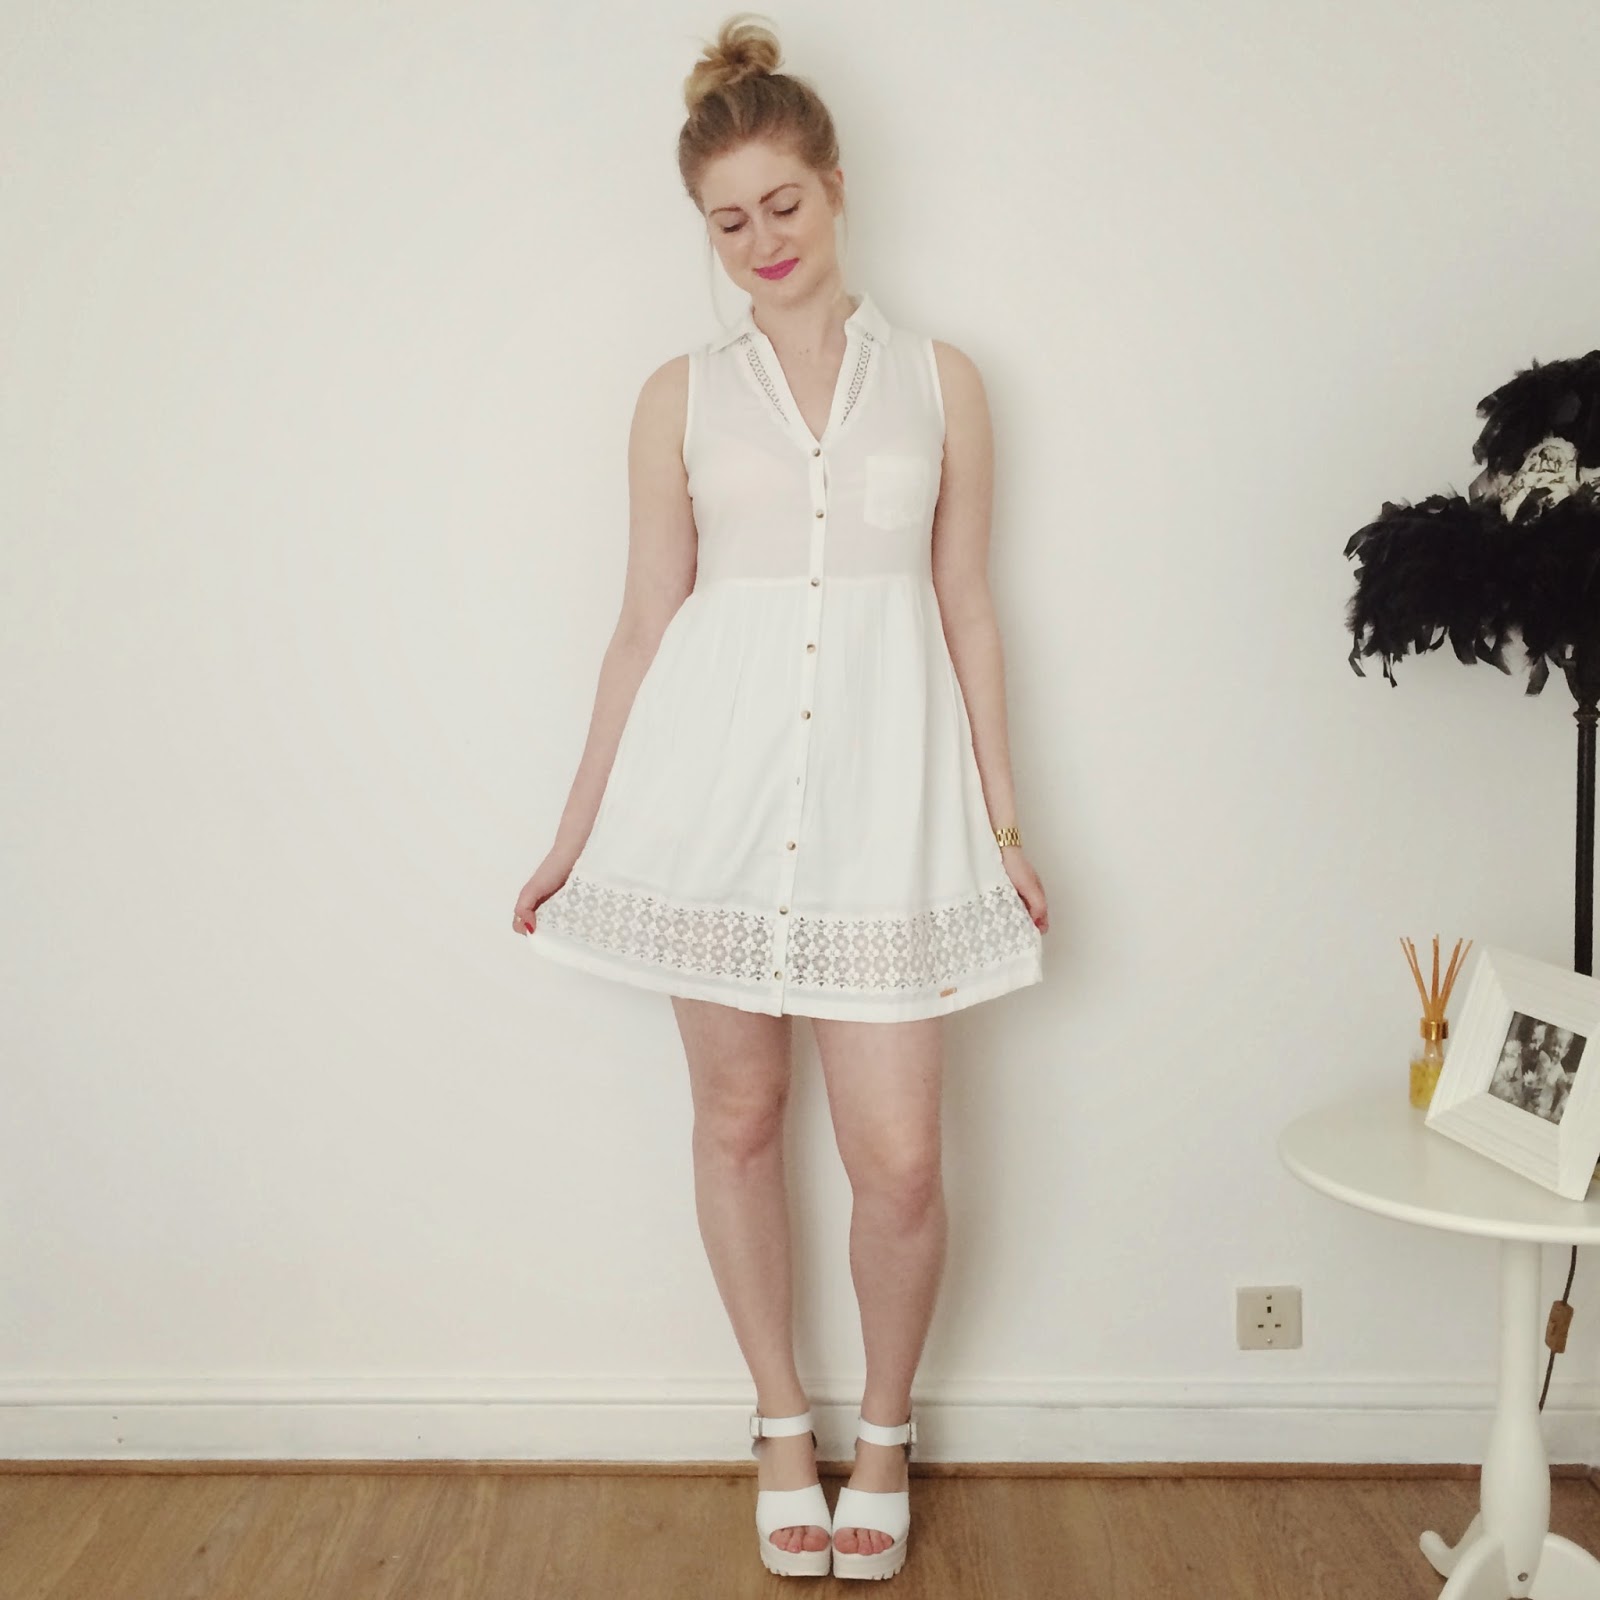 FashionFake, Superdry dresses, summer style, fashion bloggers